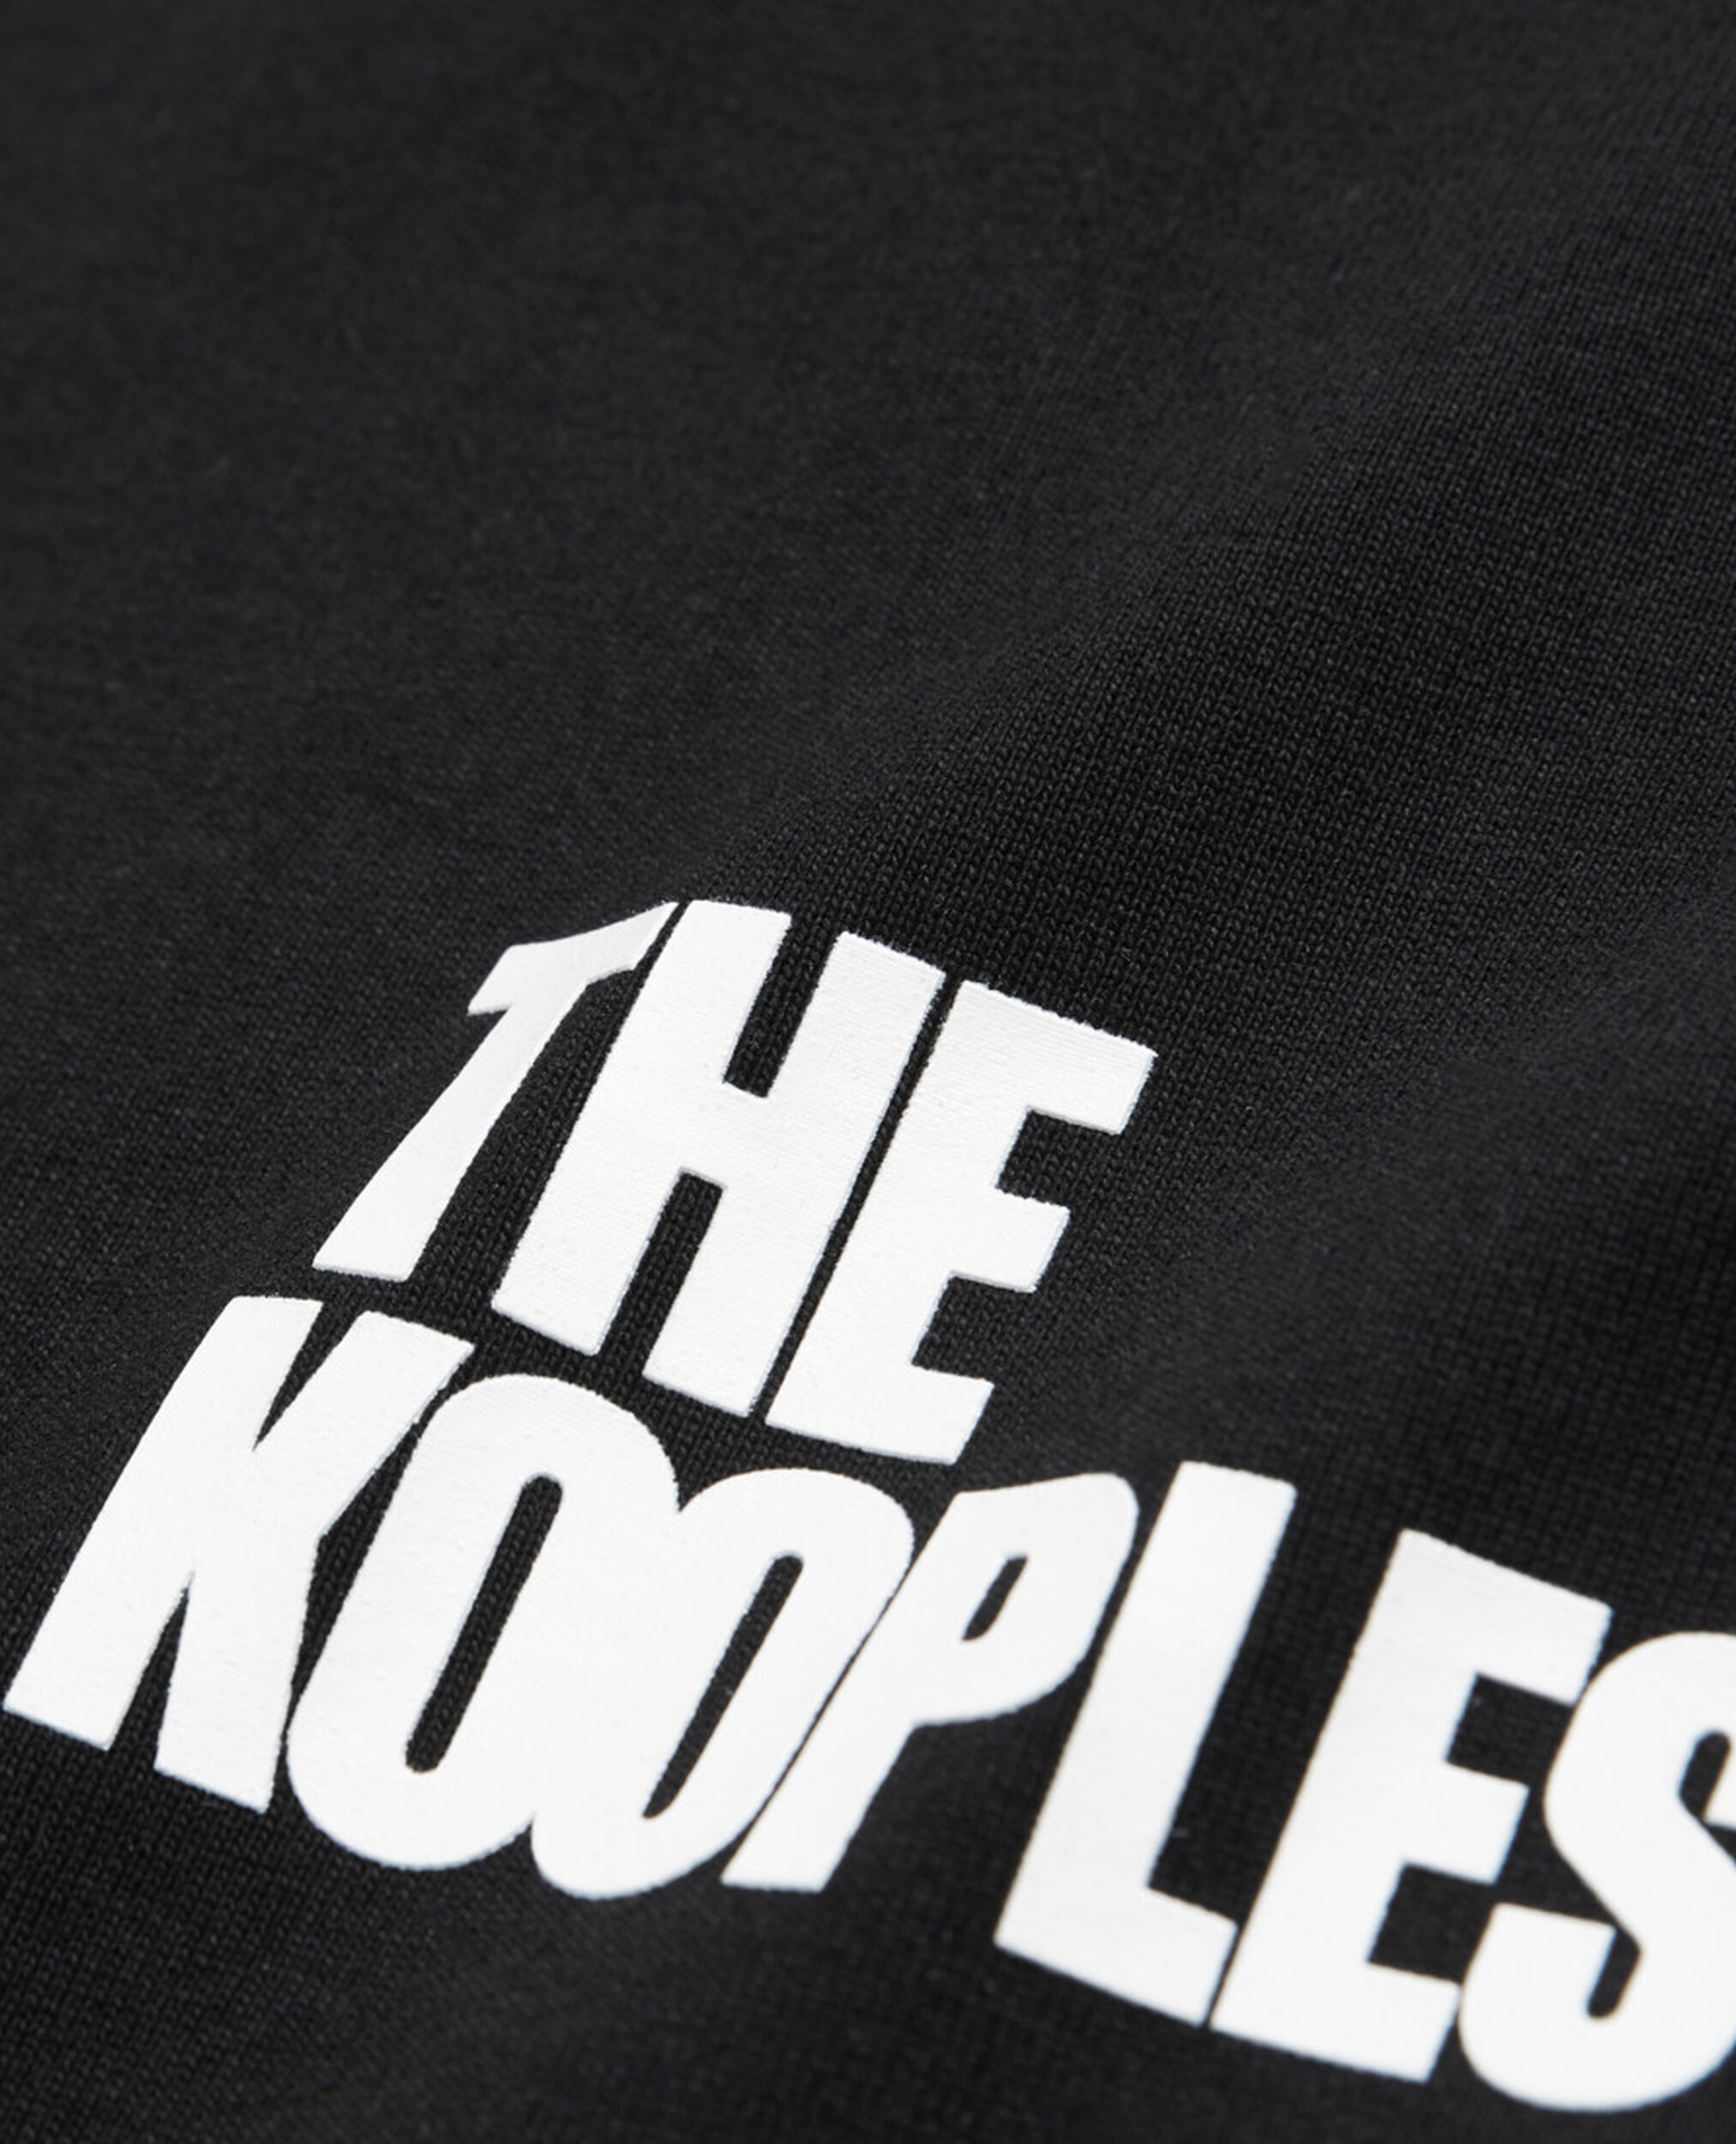 T-shirt logo The Kooples noir, BLACK, hi-res image number null